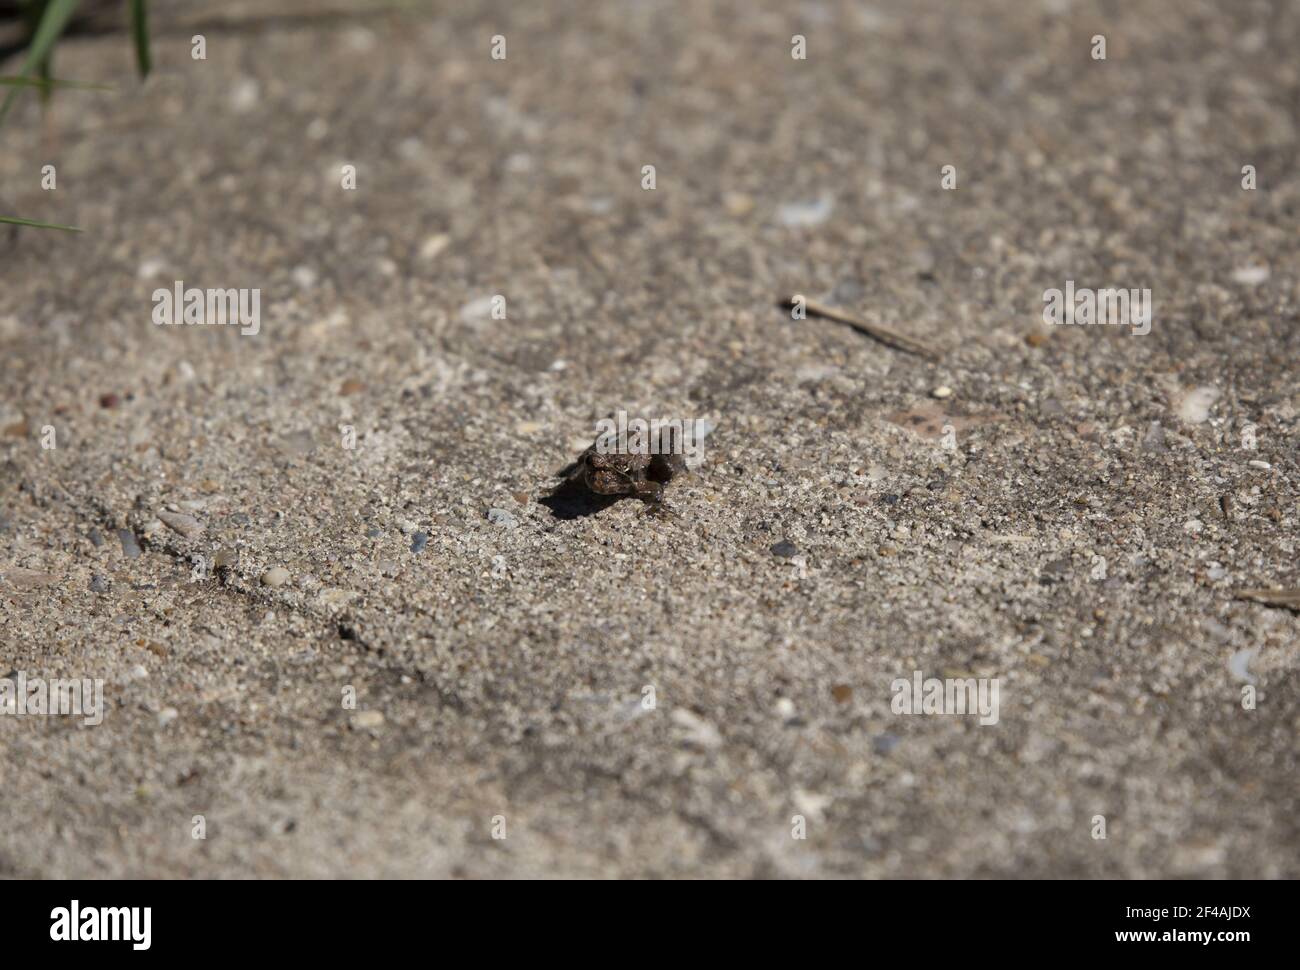 Petite grenouille chorus de Strecker (Pseudacris streckeri) brune sur un trottoir en ciment Banque D'Images